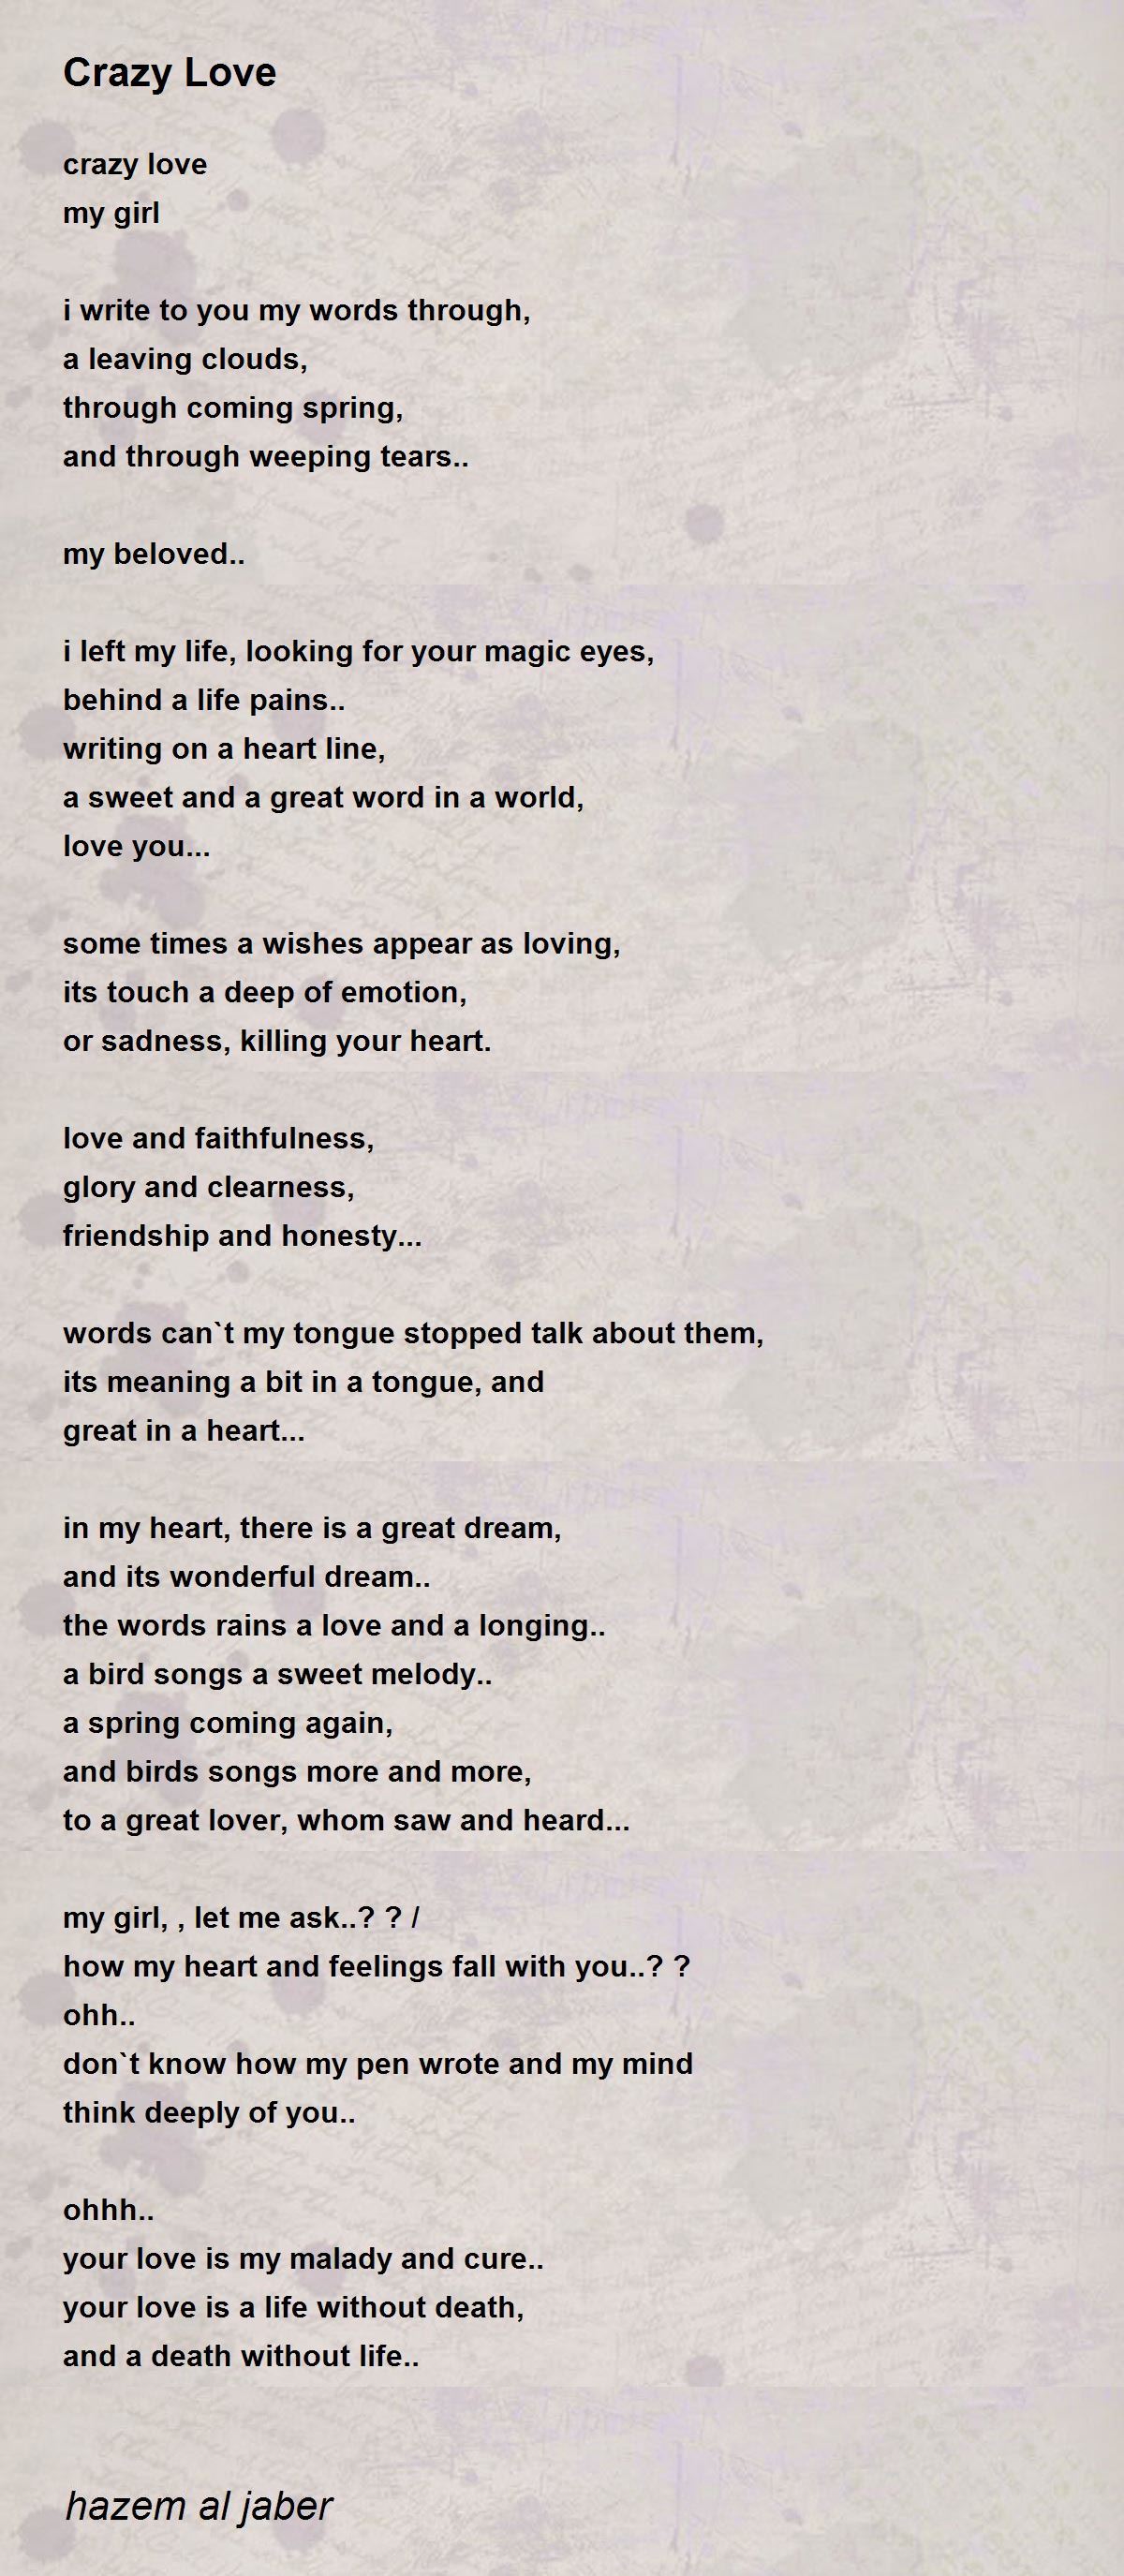 Crazy Love - Crazy Love Poem by hazem al jaber